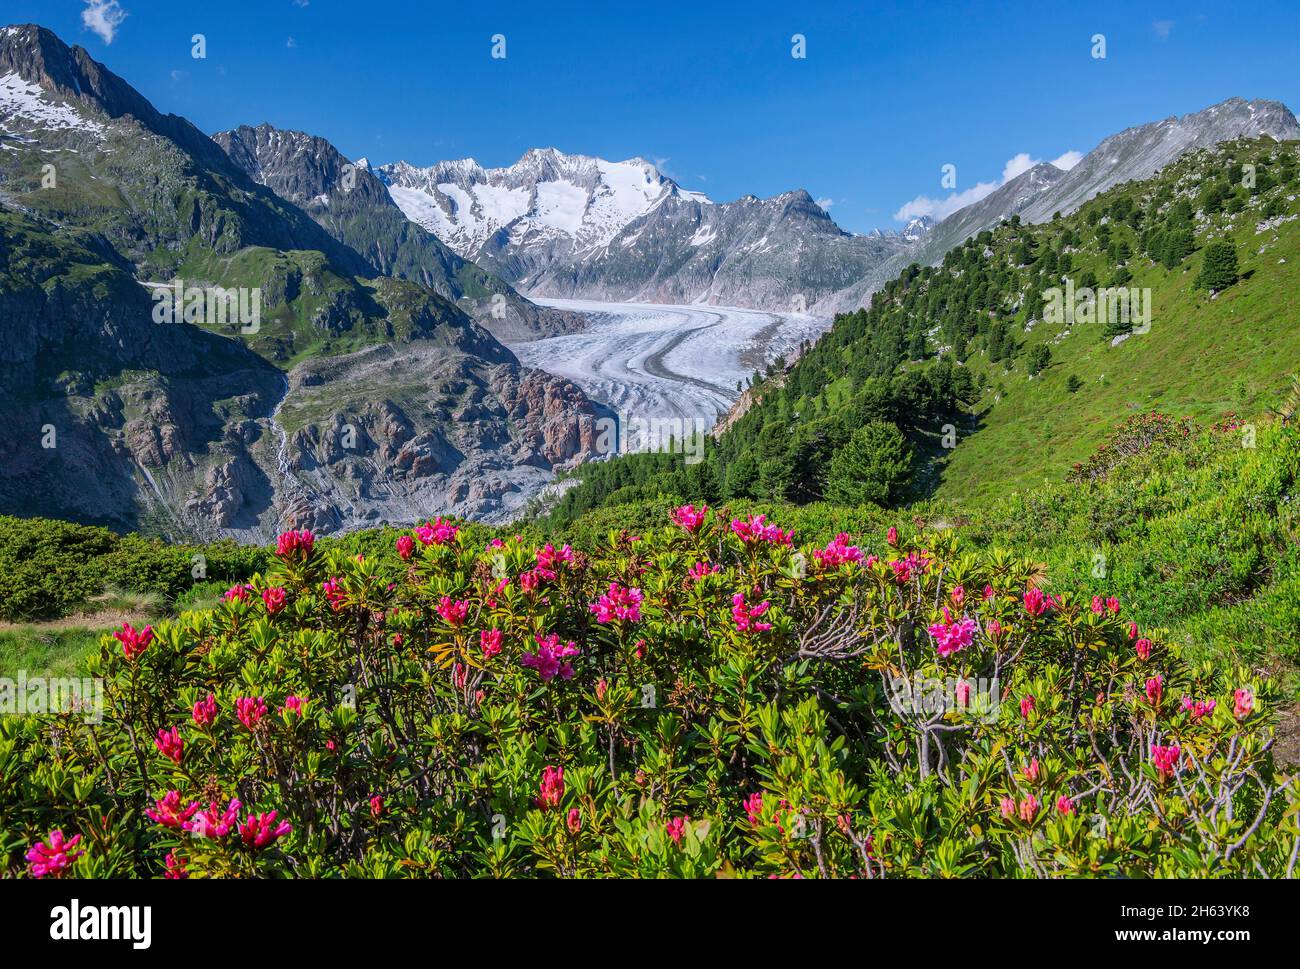 la rose alpine s'épanouit au-dessus du grand glacier d'aletsch contre le wannenhorn 3906m dans la région d'aletsch zone de randonnée, riederalp, alpes bernoises, valais, suisse Banque D'Images